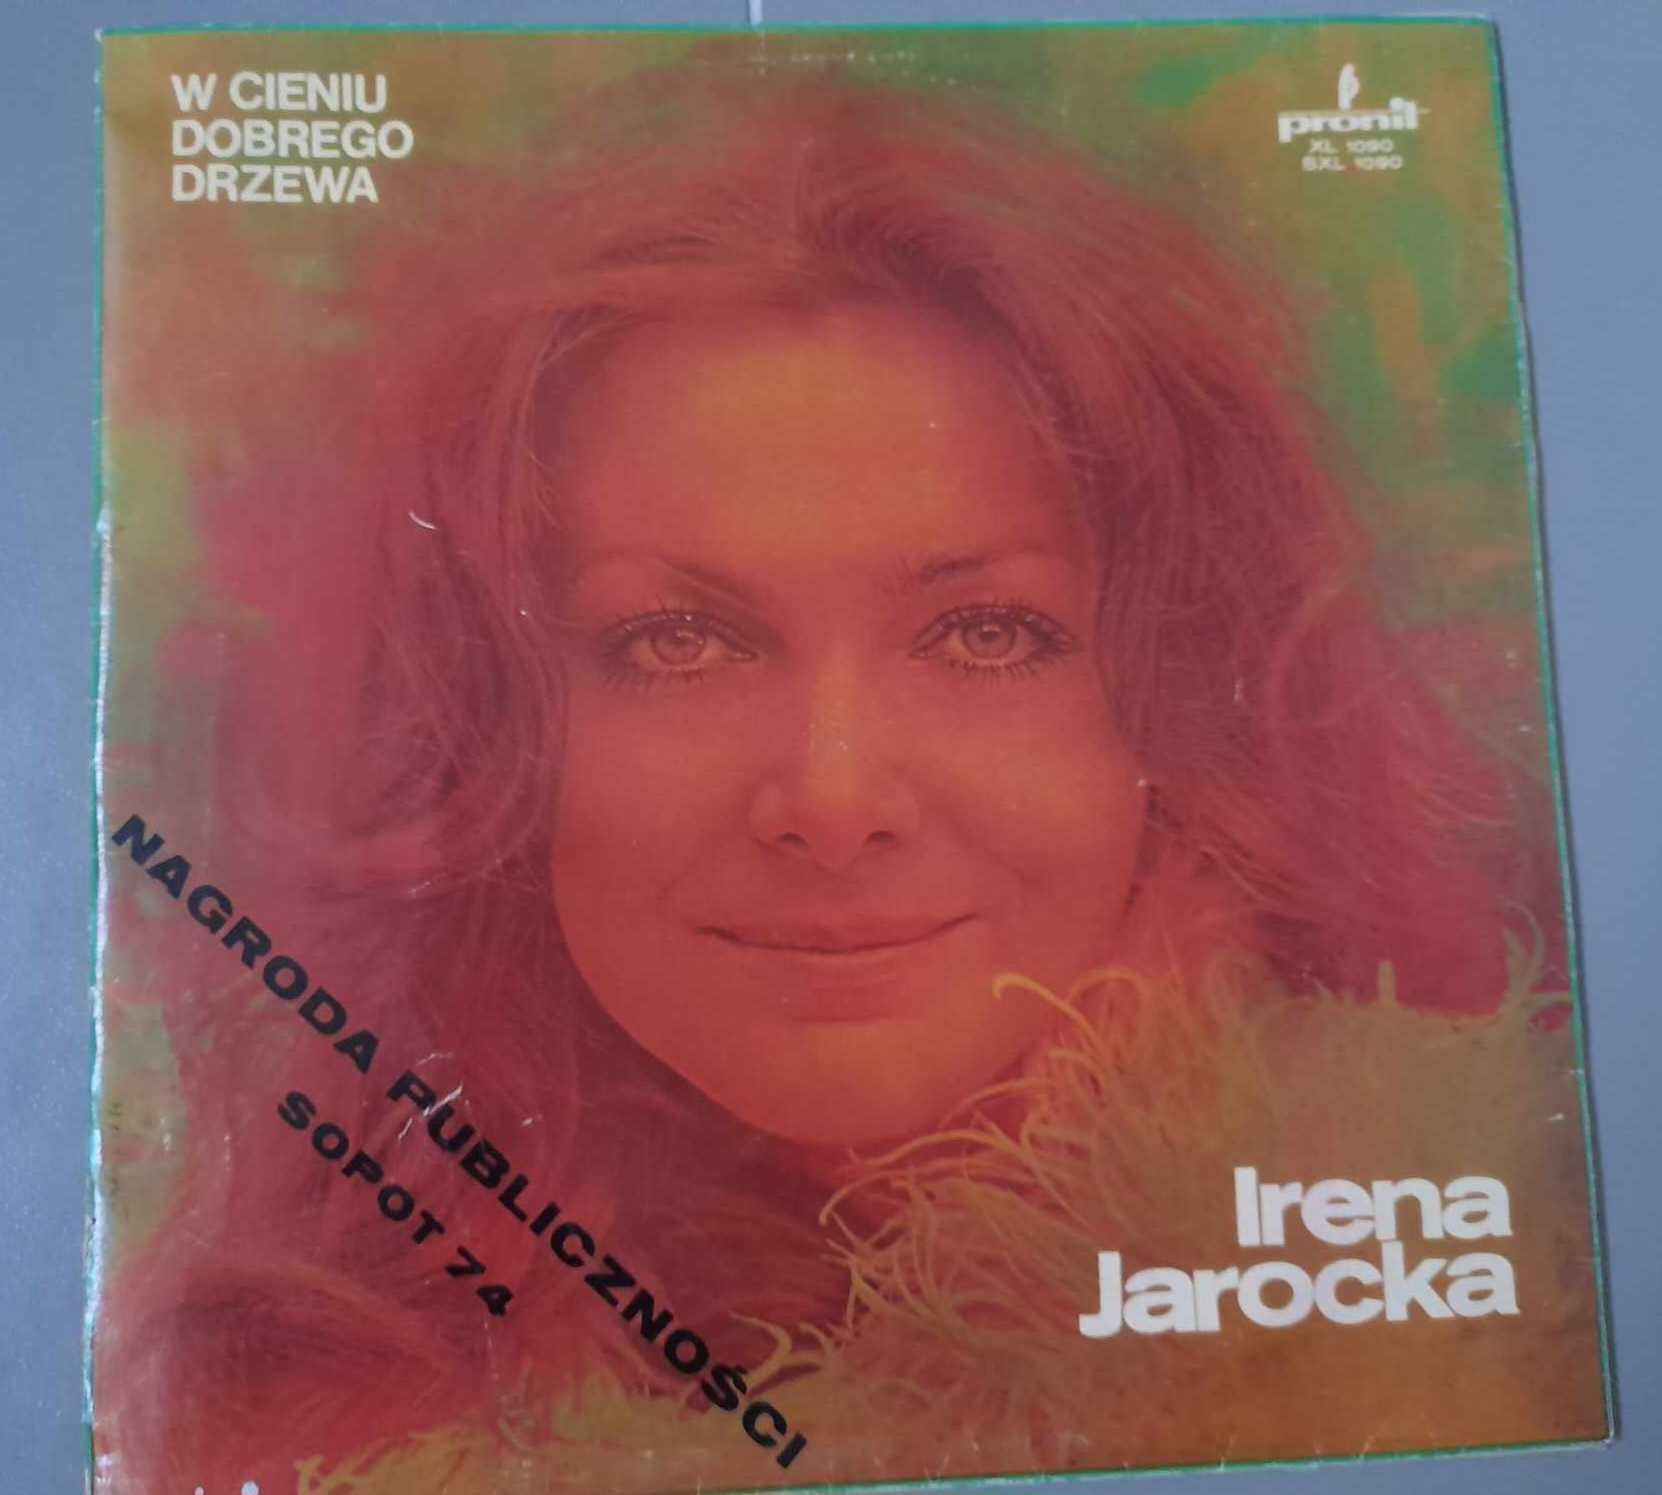 Płyta winylowa Irena Jarocka "W cieniu dobrego drzewa"